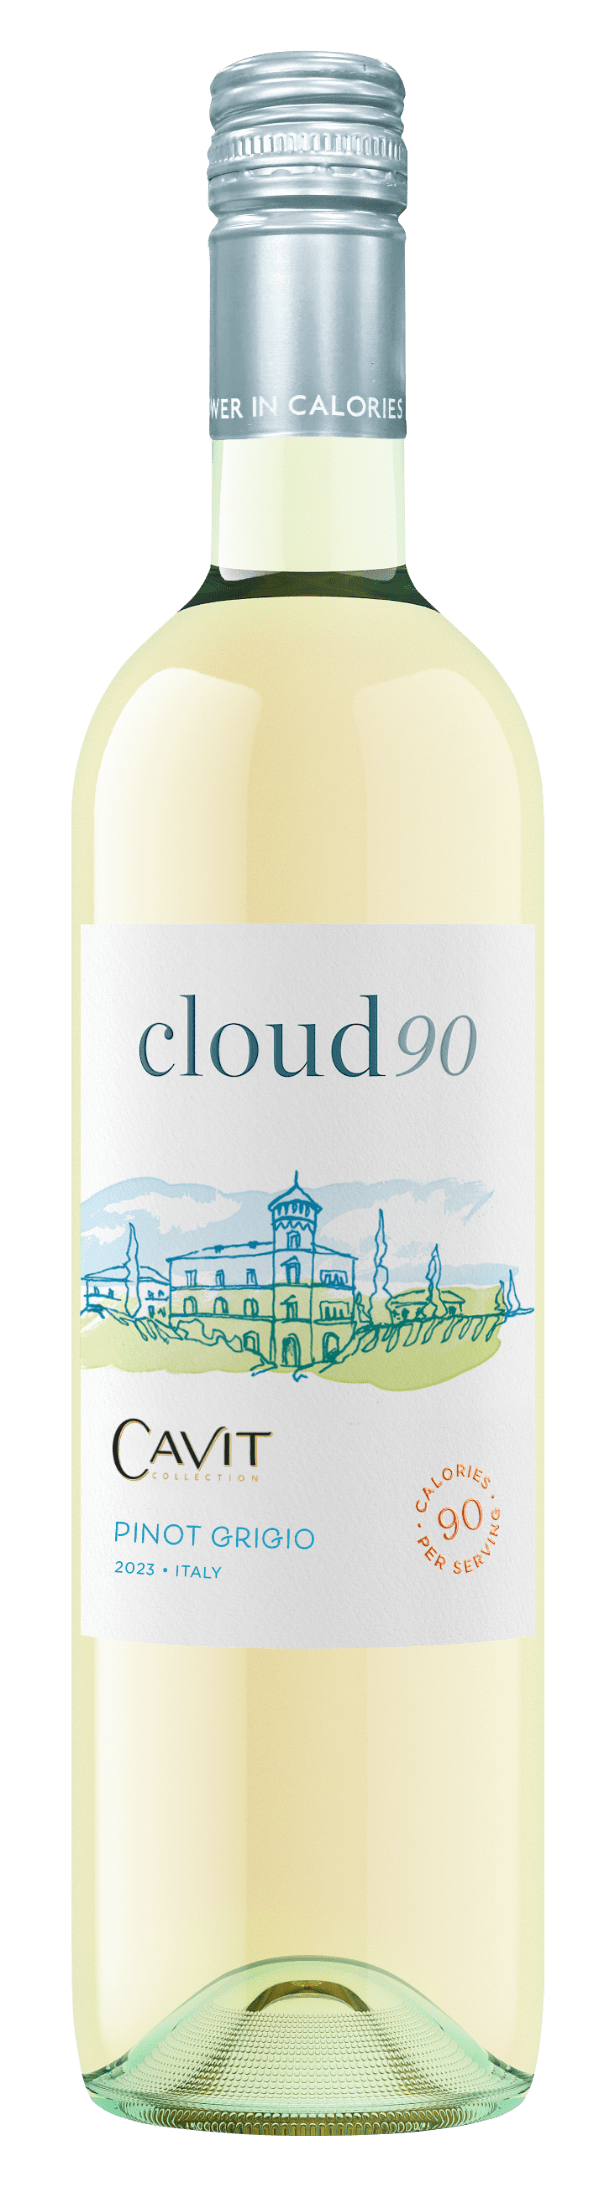 Cavit Cloud90 Bottle